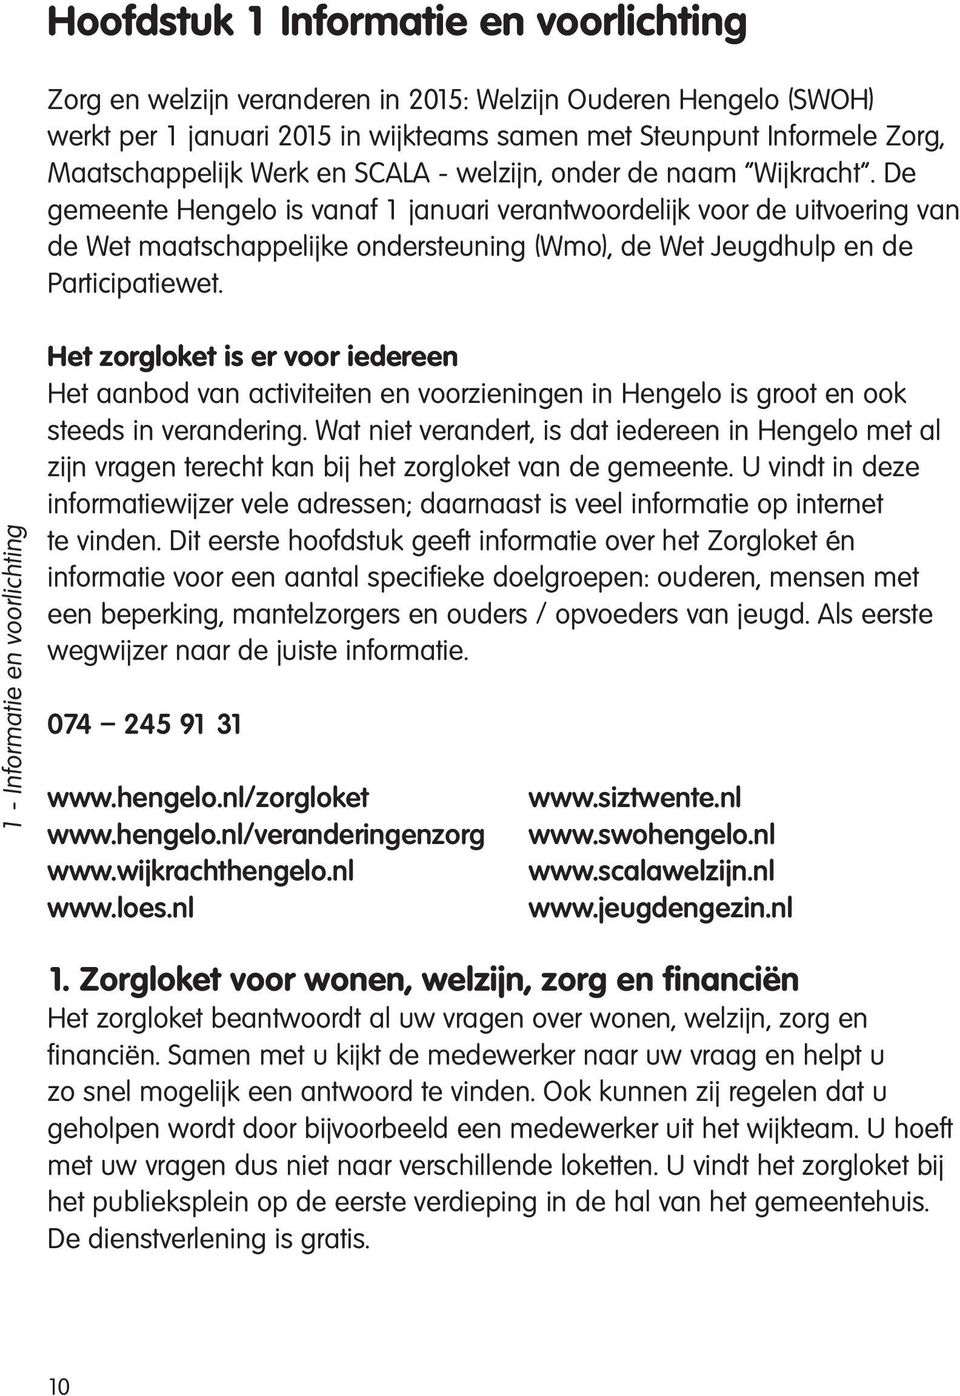 De gemeente Hengelo is vanaf 1 januari verantwoordelijk voor de uitvoering van de Wet maatschappelijke ondersteuning (Wmo), de Wet Jeugdhulp en de Participatiewet.